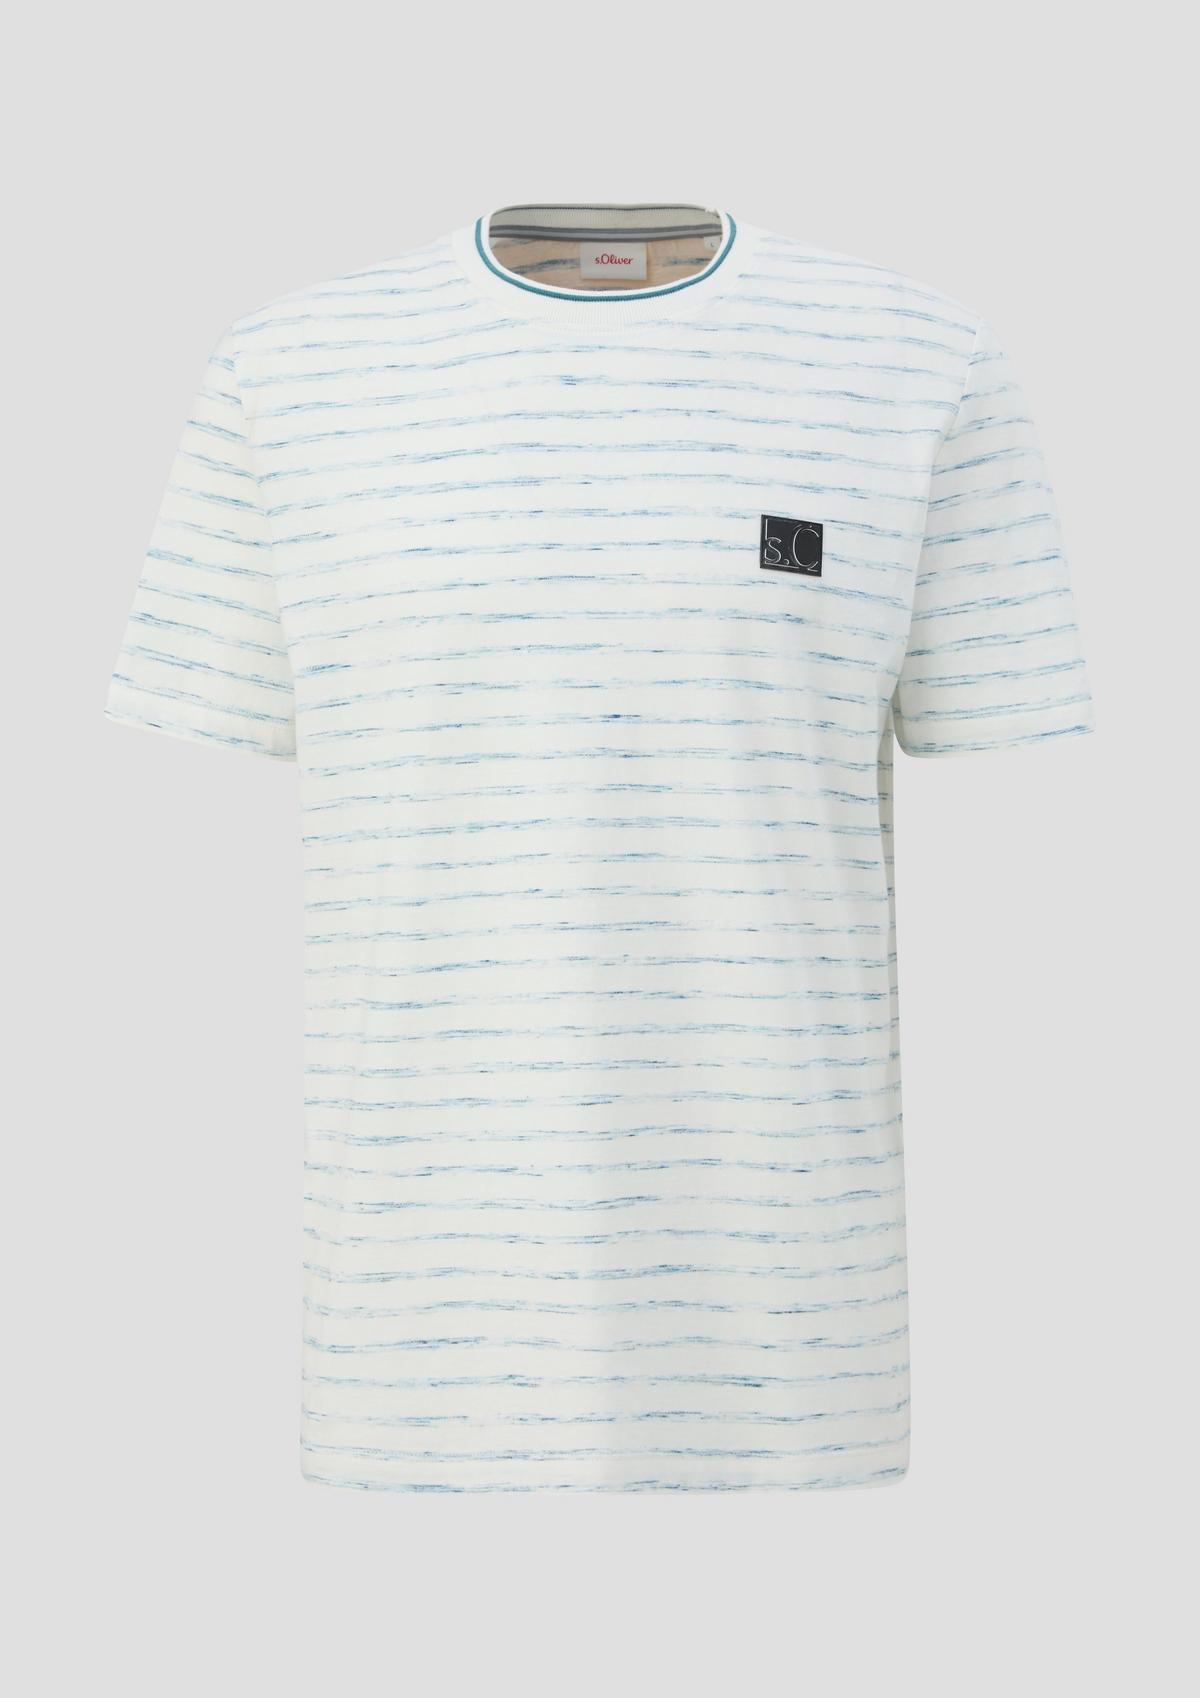 s.Oliver T-Shirt mit Streifenmuster